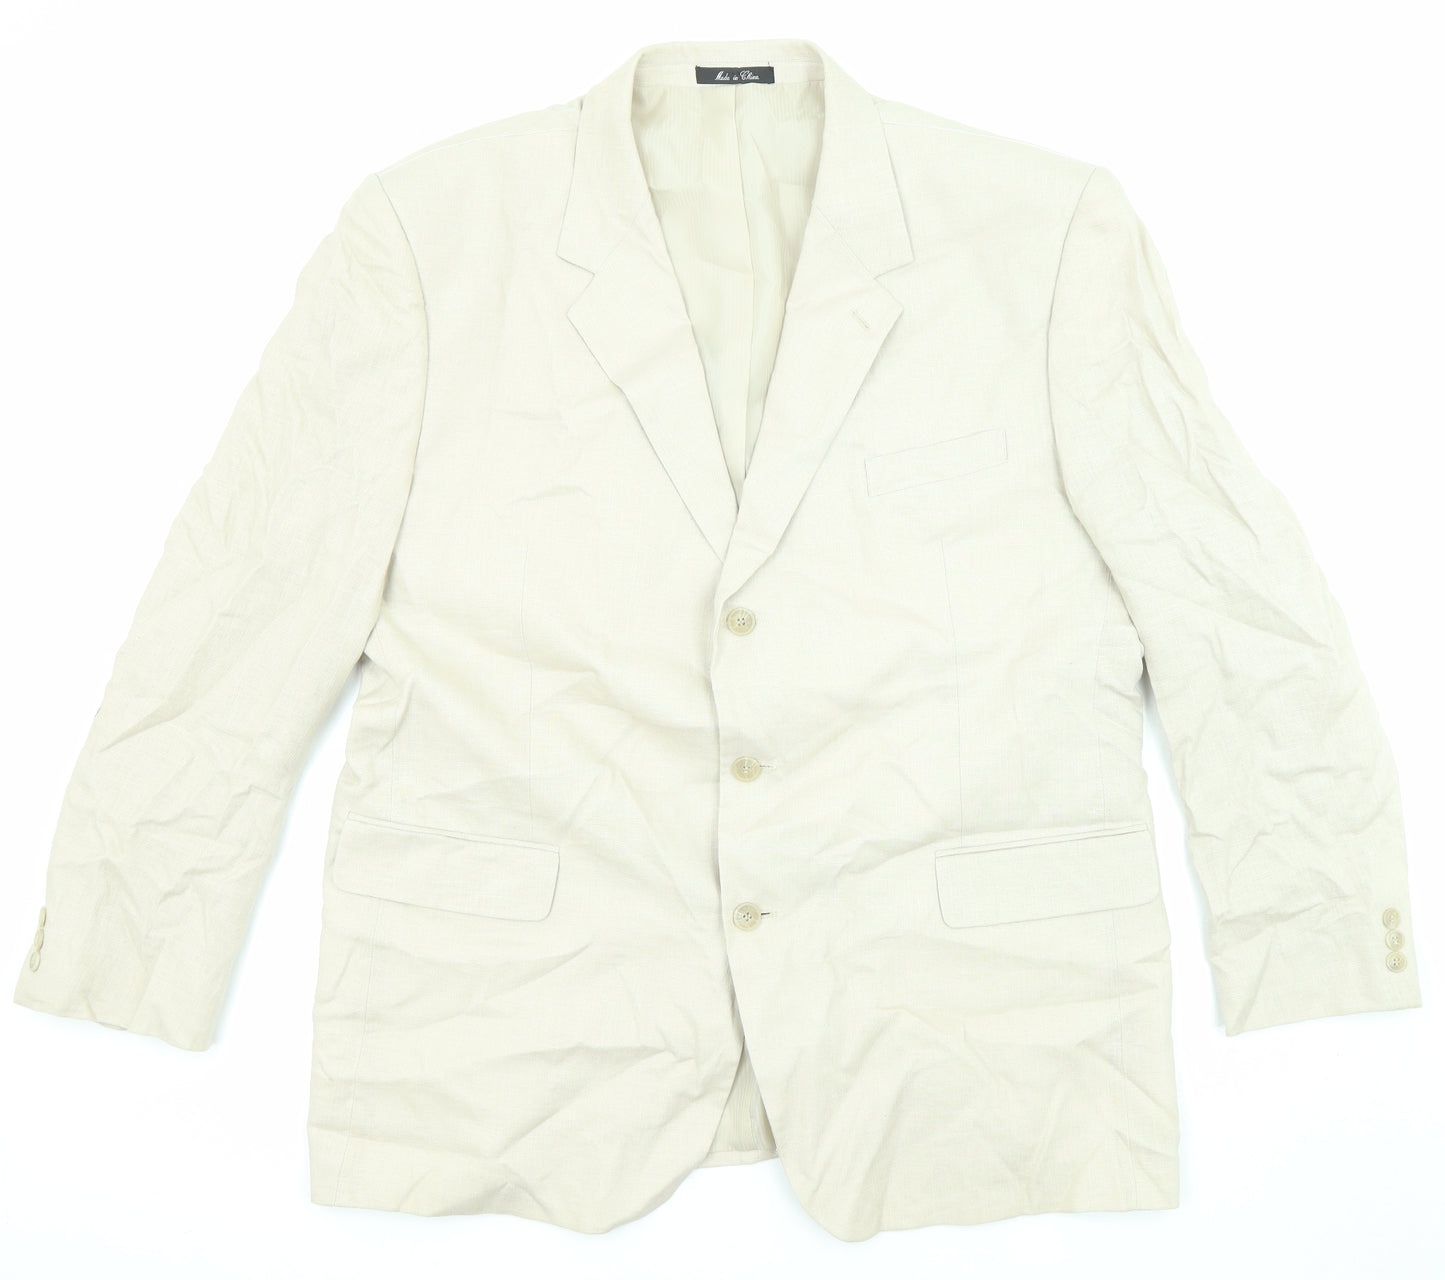 Calvin American Mens Beige Linen Jacket Suit Jacket Size 46 Regular